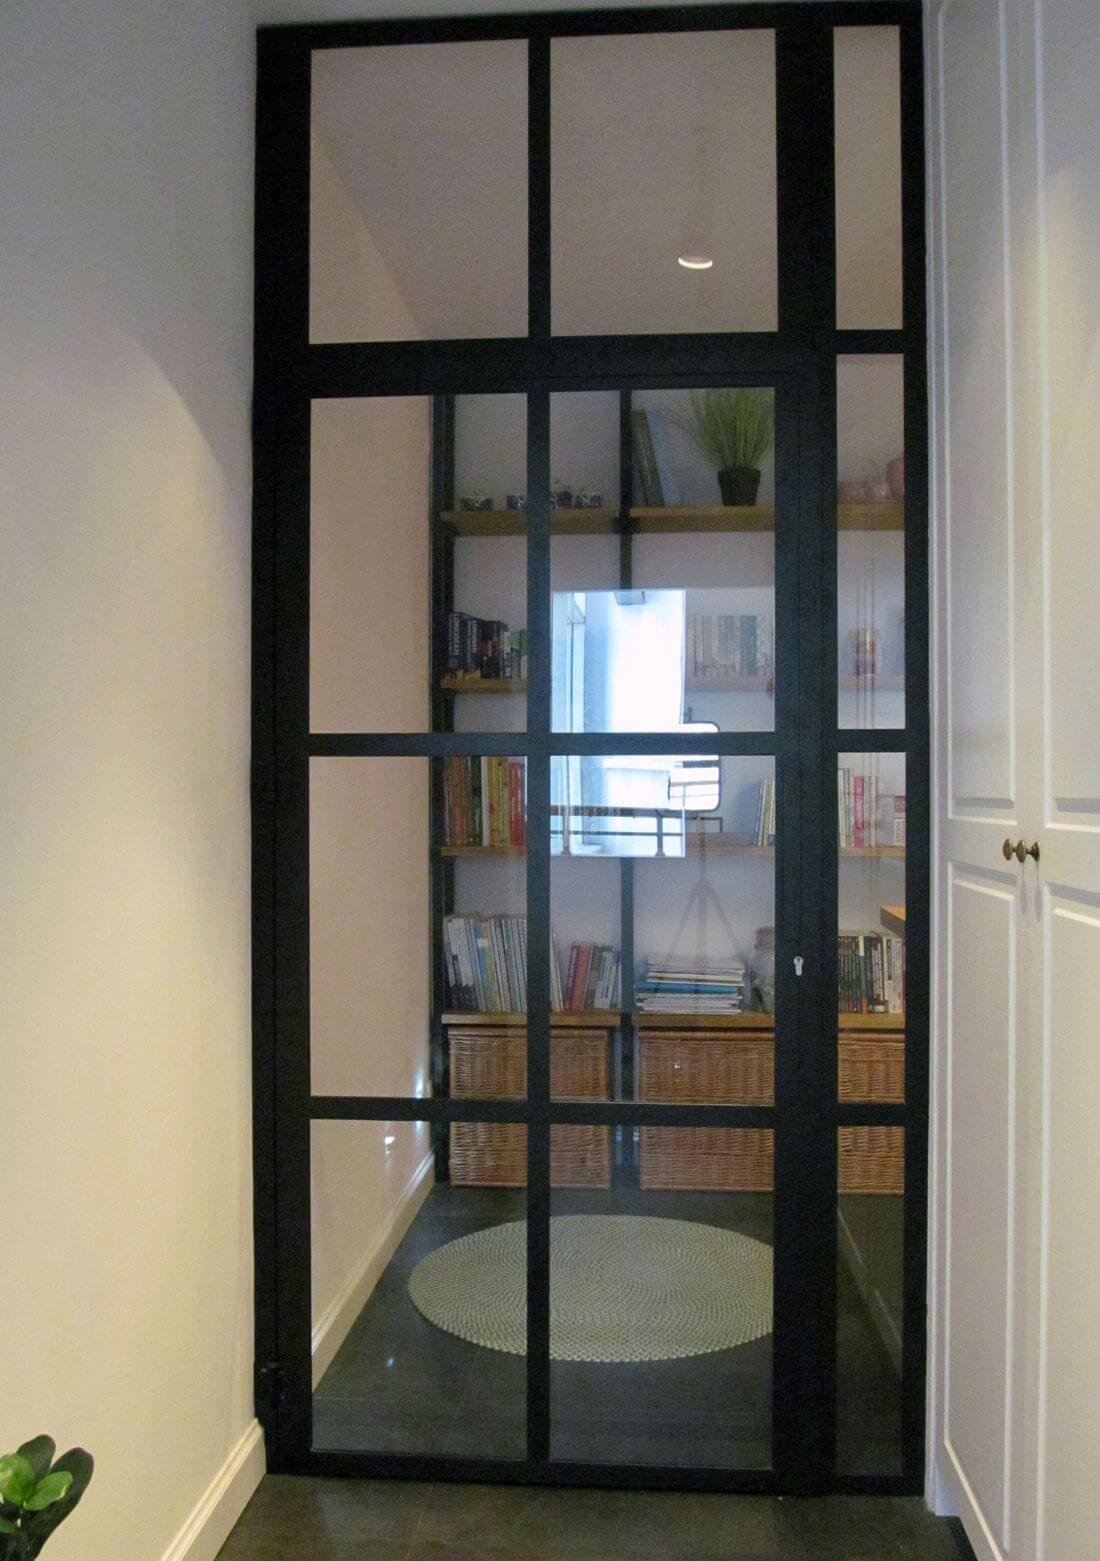 Lofttür mit Oberlicht und verglastem Rahmen aus schwarzem Baustahl und Sicherheitsglas 33.1